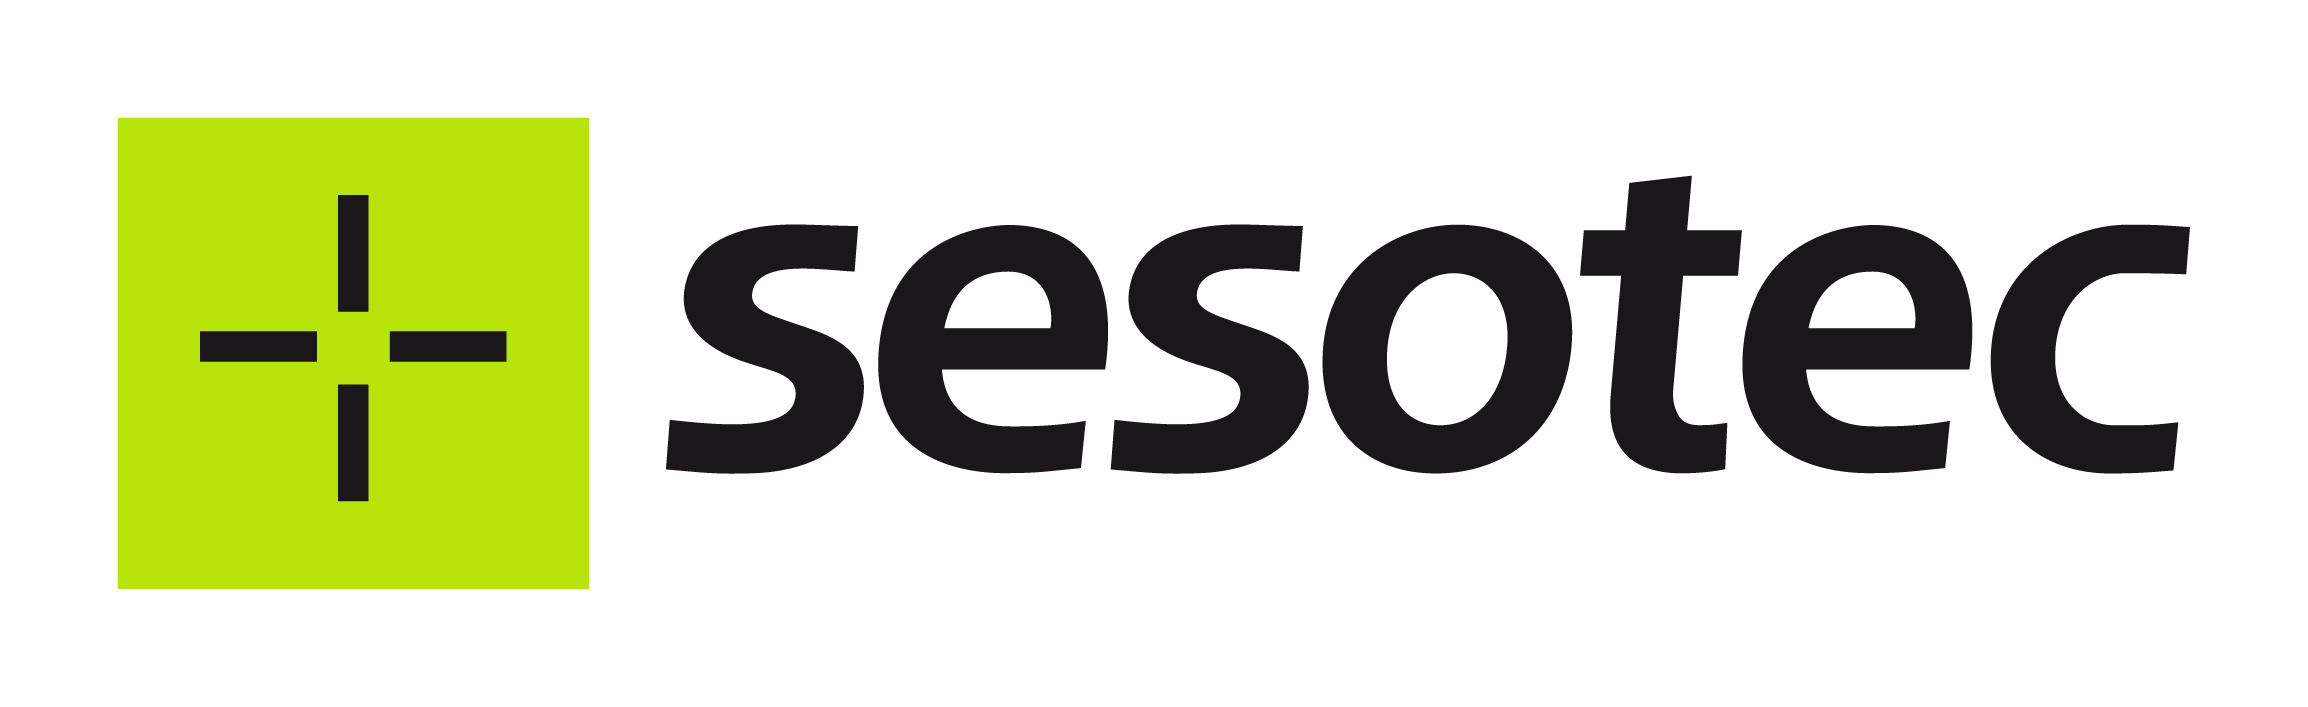 sesotec-logo-web-zone.